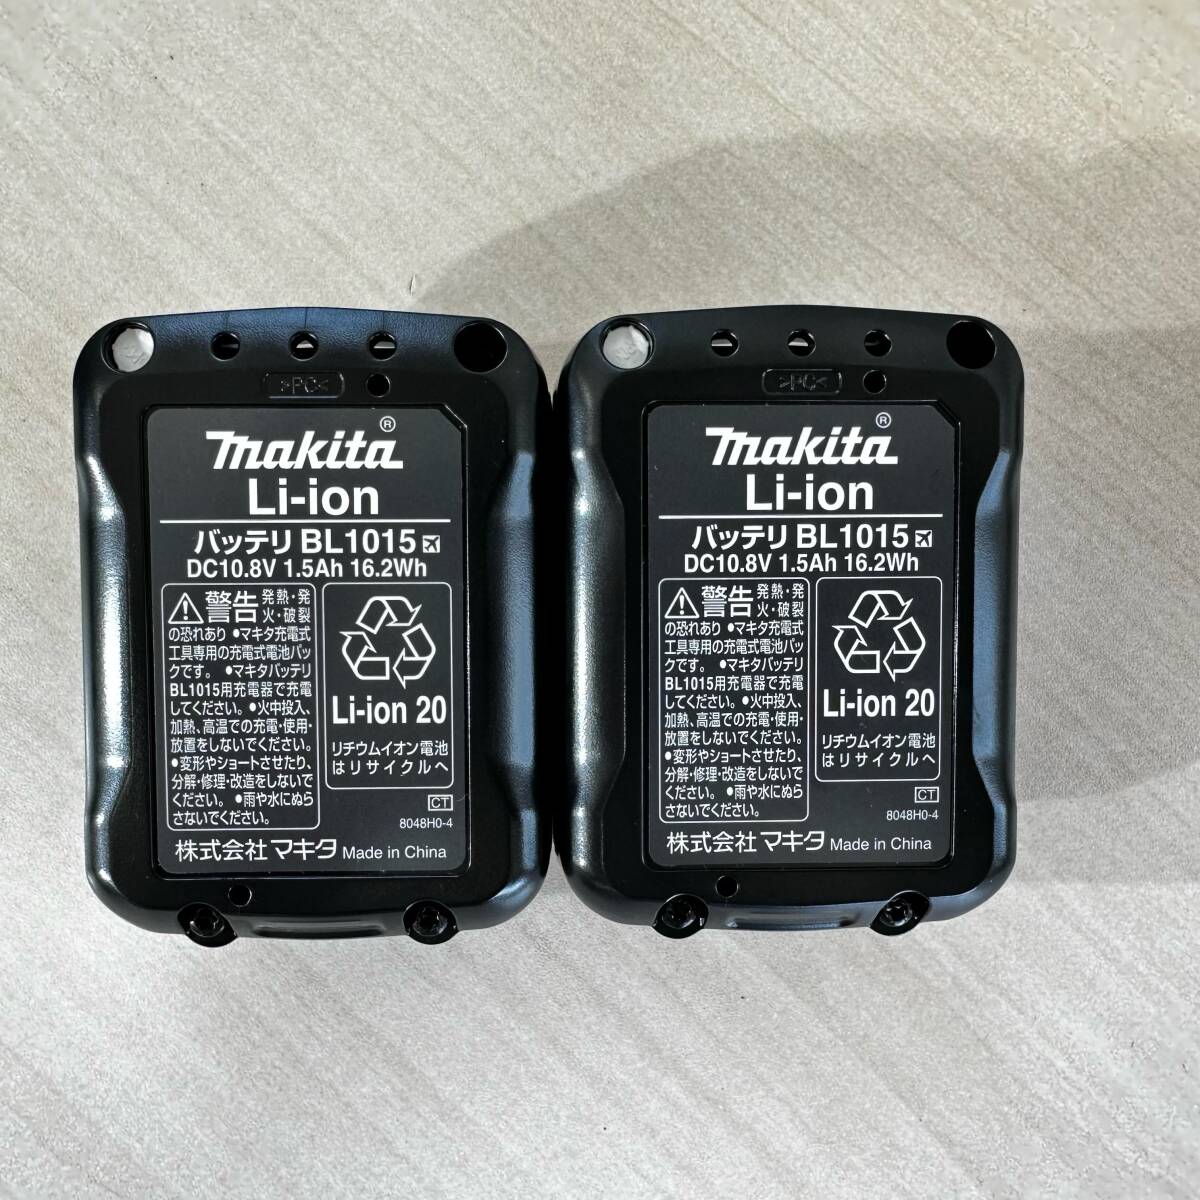 マキタ インパクトドライバ TD110DSHXW ホワイト 白色 makita 充電式 ドライバ フルセット 未使用に近い感じです 10.8V_画像5